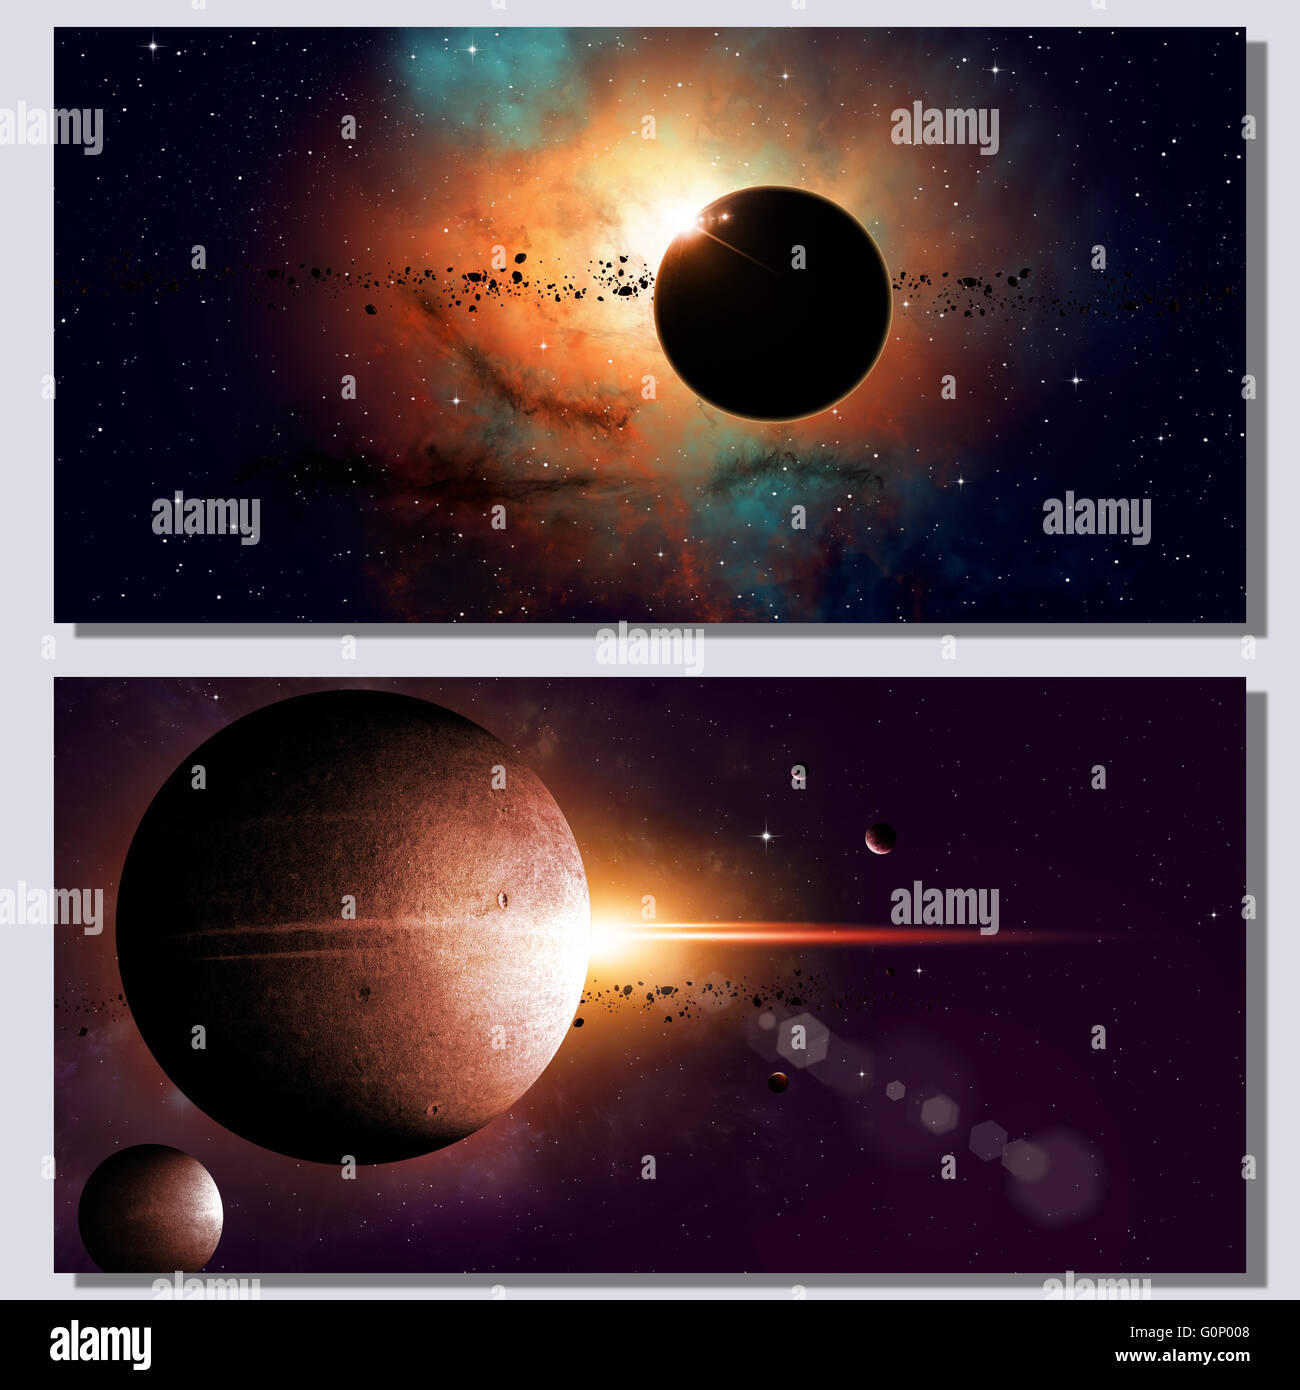 Fantasia astratta dello spazio profondo banner con i pianeti e le stelle Foto Stock